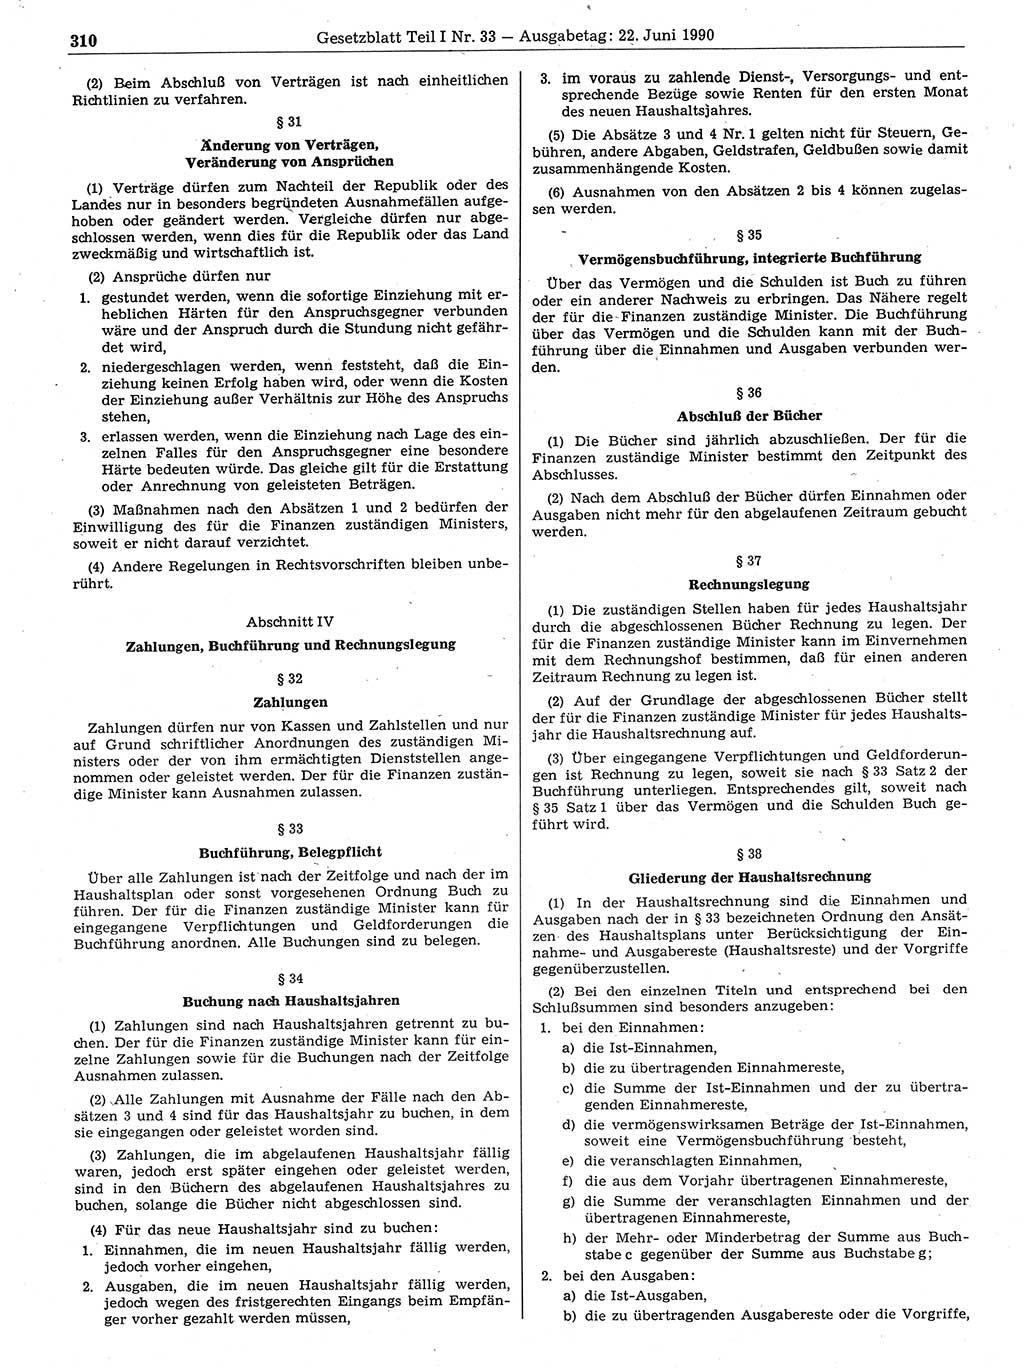 Gesetzblatt (GBl.) der Deutschen Demokratischen Republik (DDR) Teil Ⅰ 1990, Seite 310 (GBl. DDR Ⅰ 1990, S. 310)